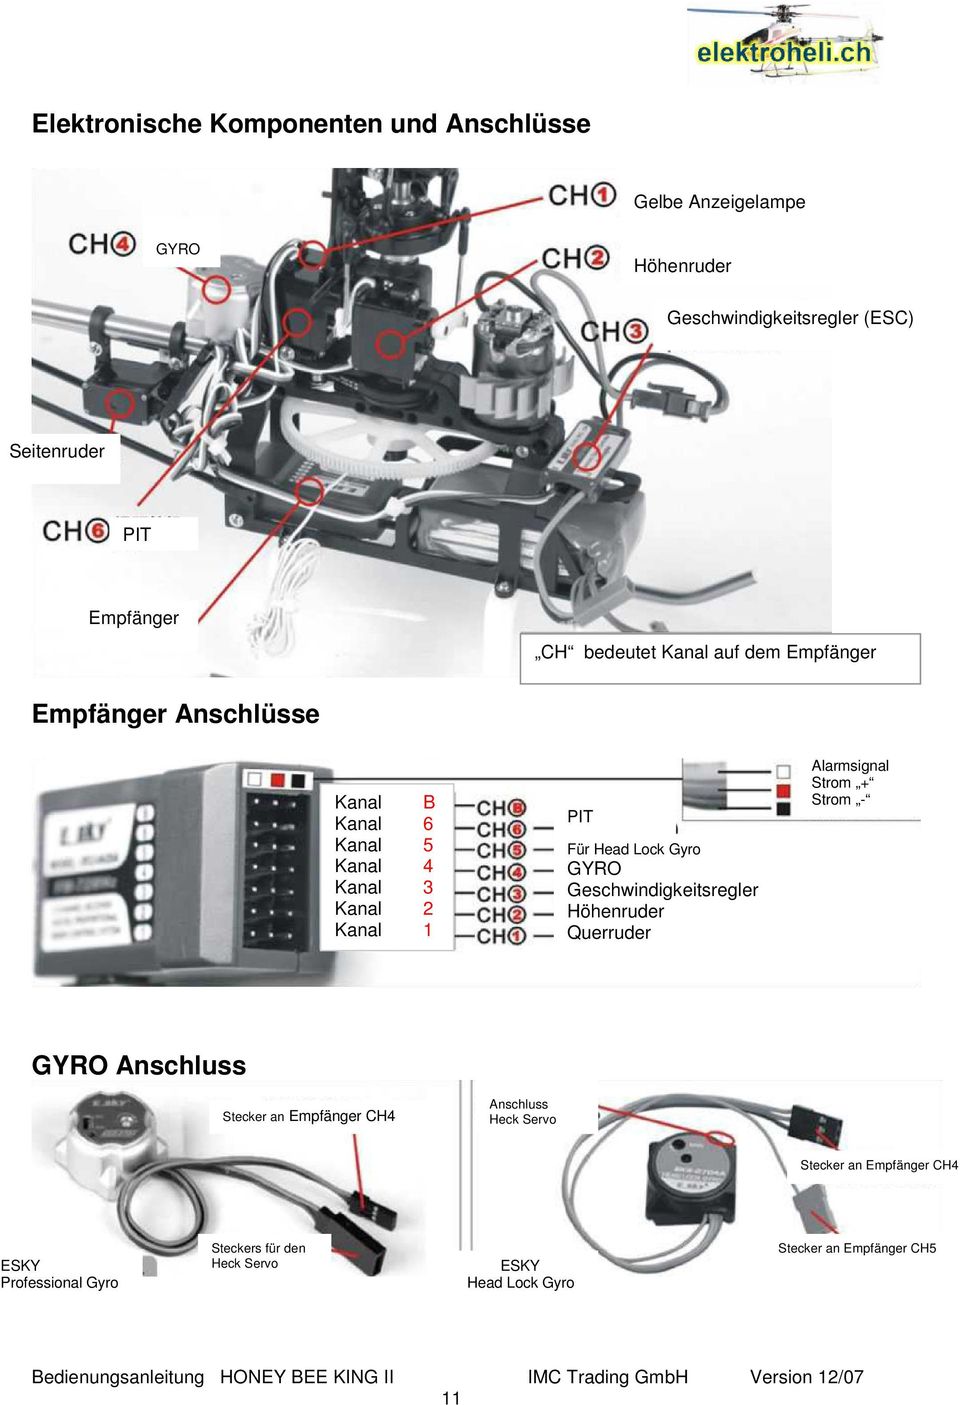 Gyro GYRO Geschwindigkeitsregler Höhenruder Querruder Alarmsignal Strom + Strom - GYRO Anschluss Stecker an Empfänger CH4 Anschluss